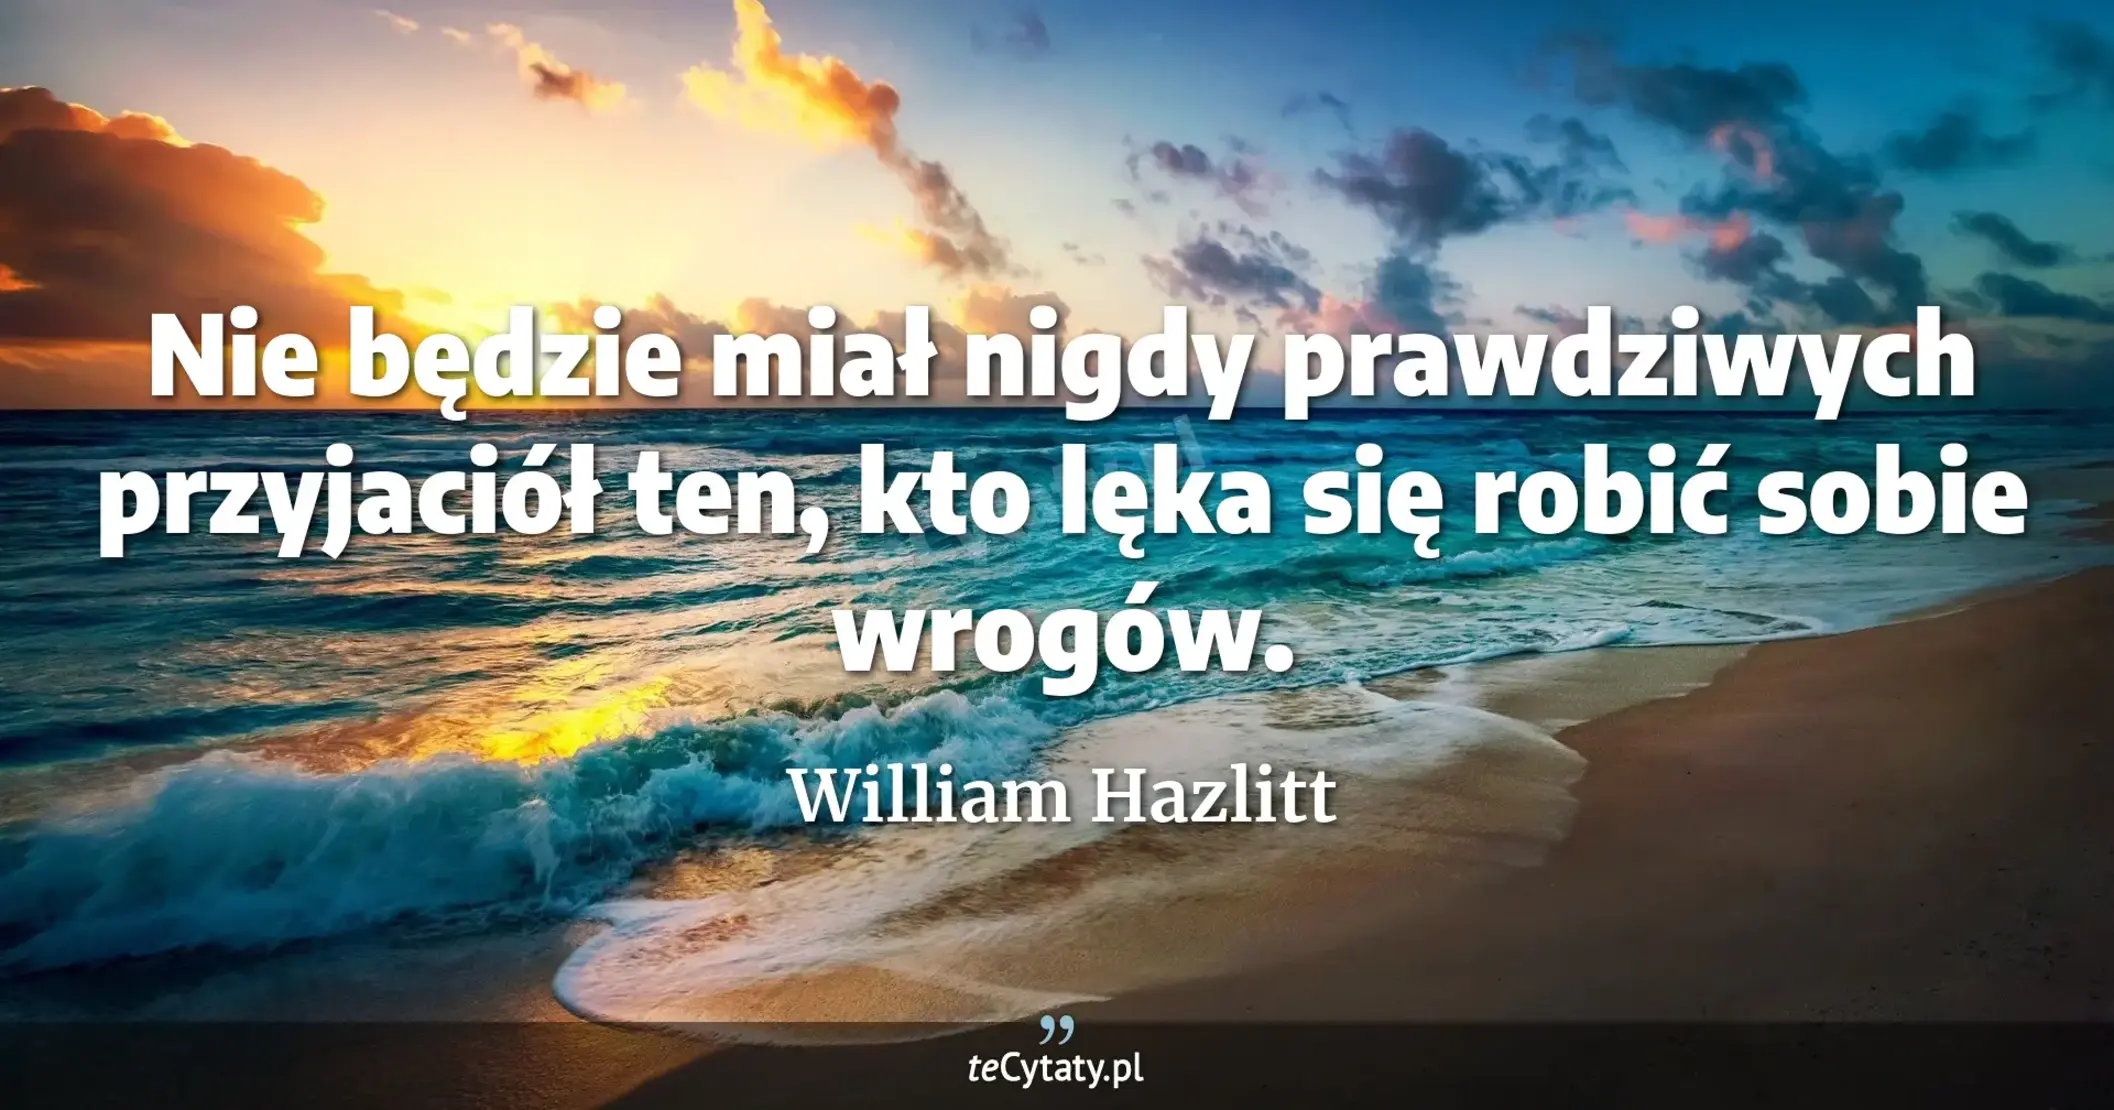 Nie będzie miał nigdy prawdziwych przyjaciół ten, kto lęka się robić sobie wrogów. - William Hazlitt